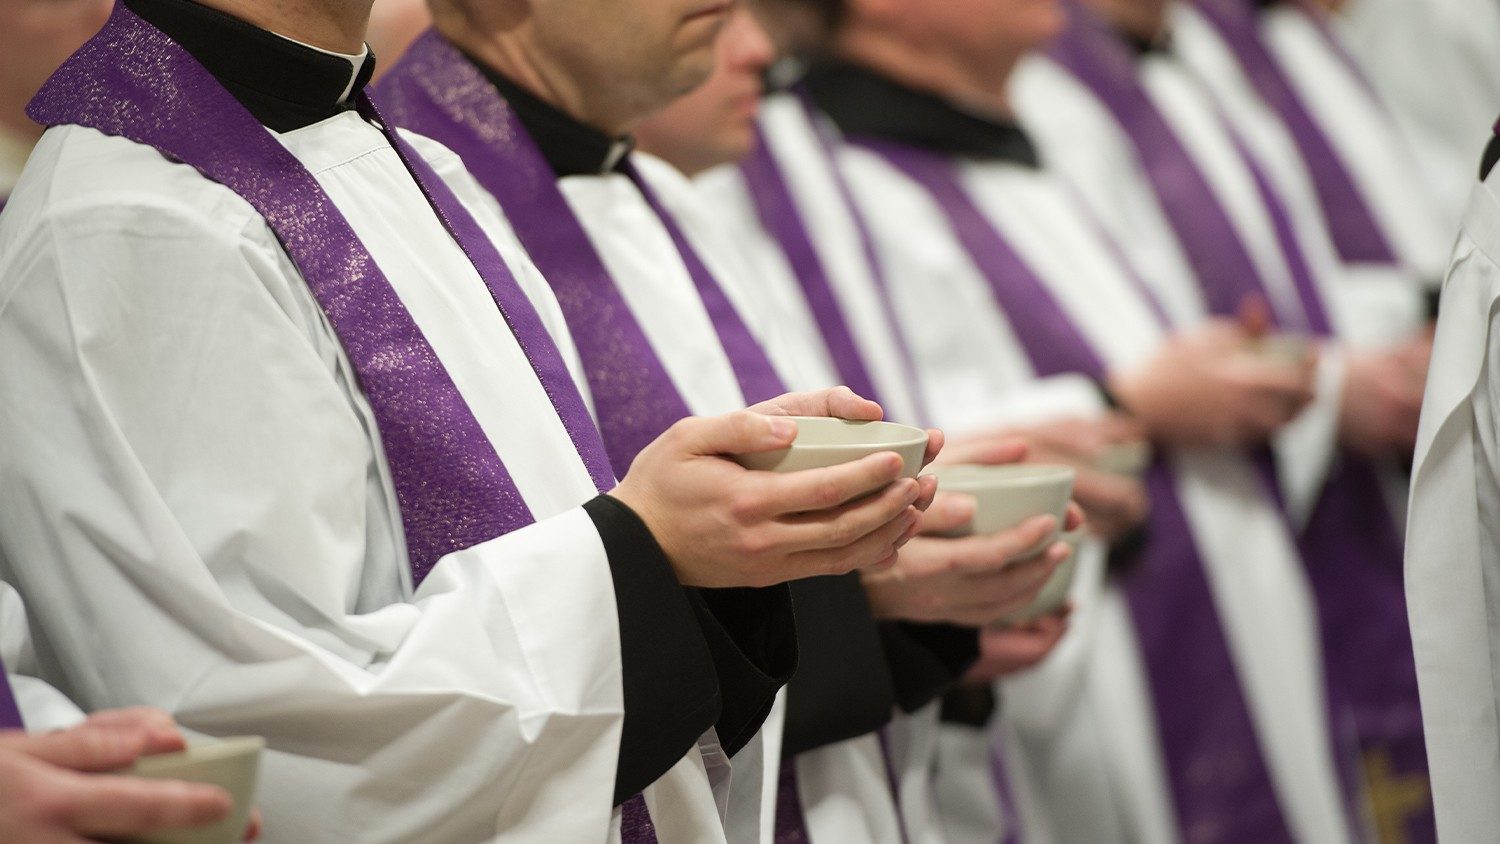 El Papa escribe a los sacerdotes: “Gracias por vuestro servicio” - Vatican  News